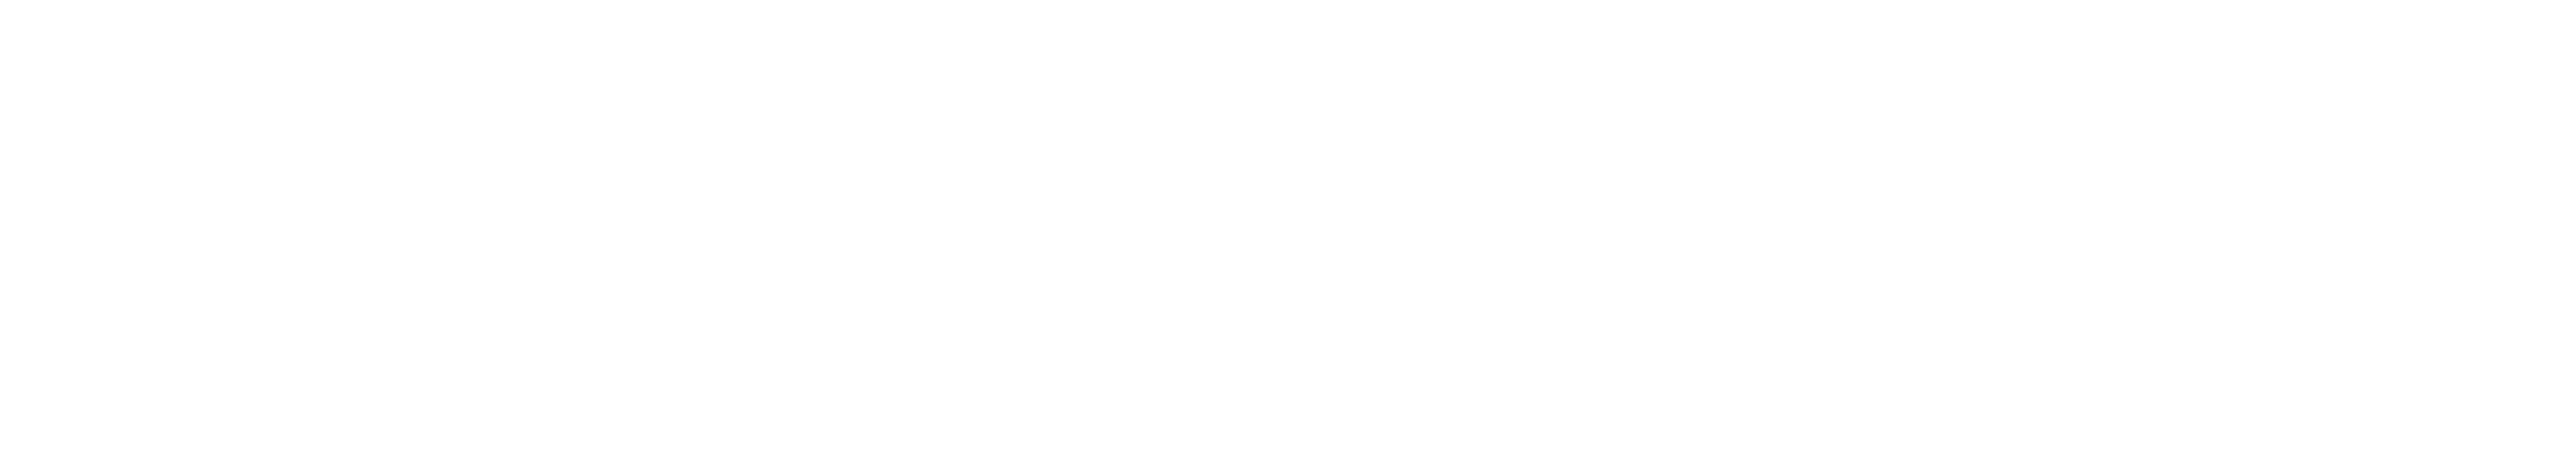 https://entegrator.co.uk/assets/img/logo-white.webp